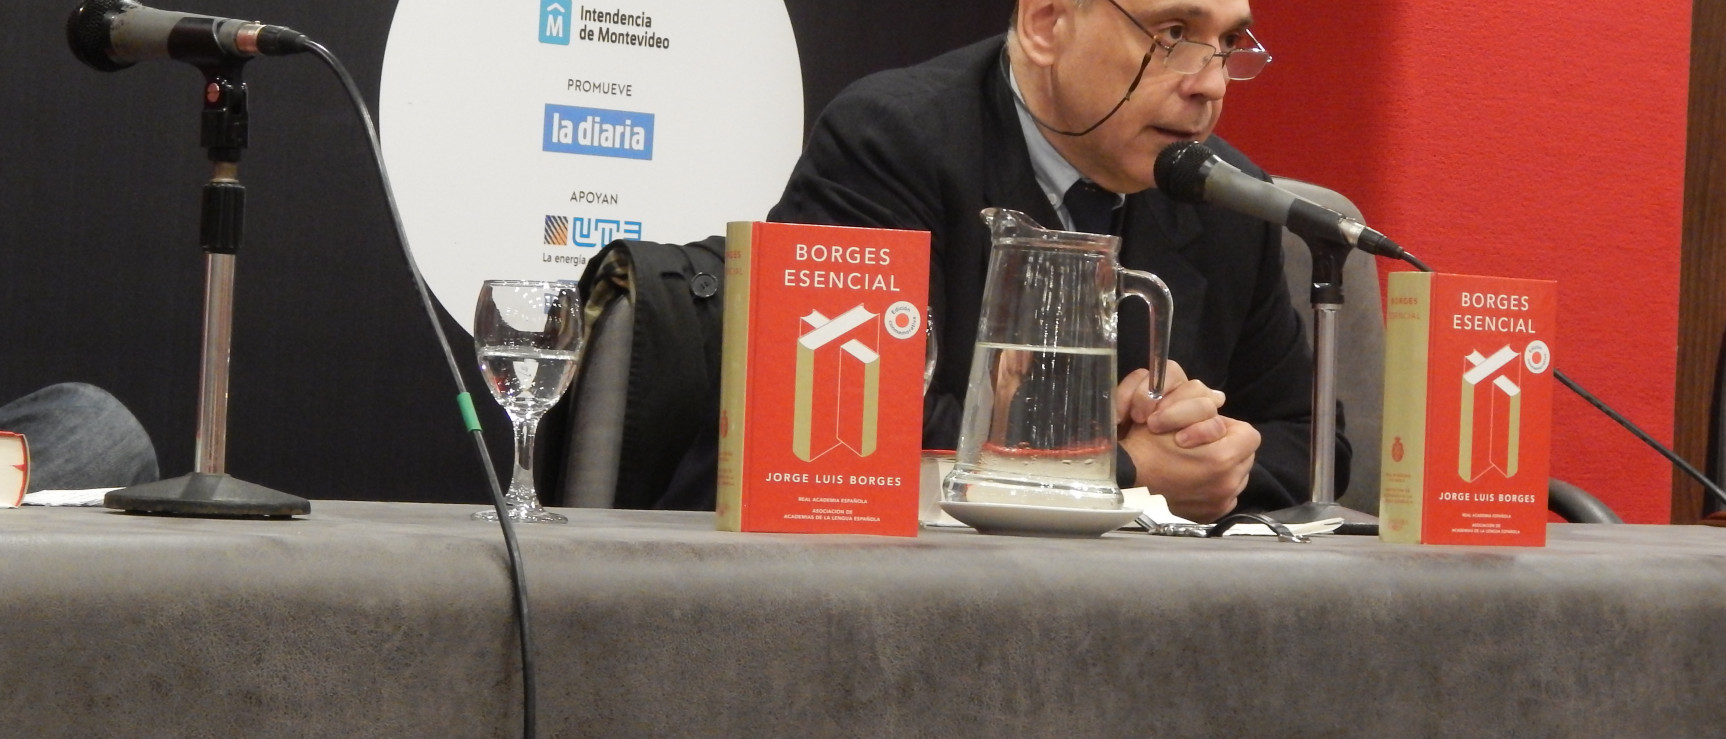 Rafael Courtoisie  presenta la edición conmemorativa «Borges esencial».